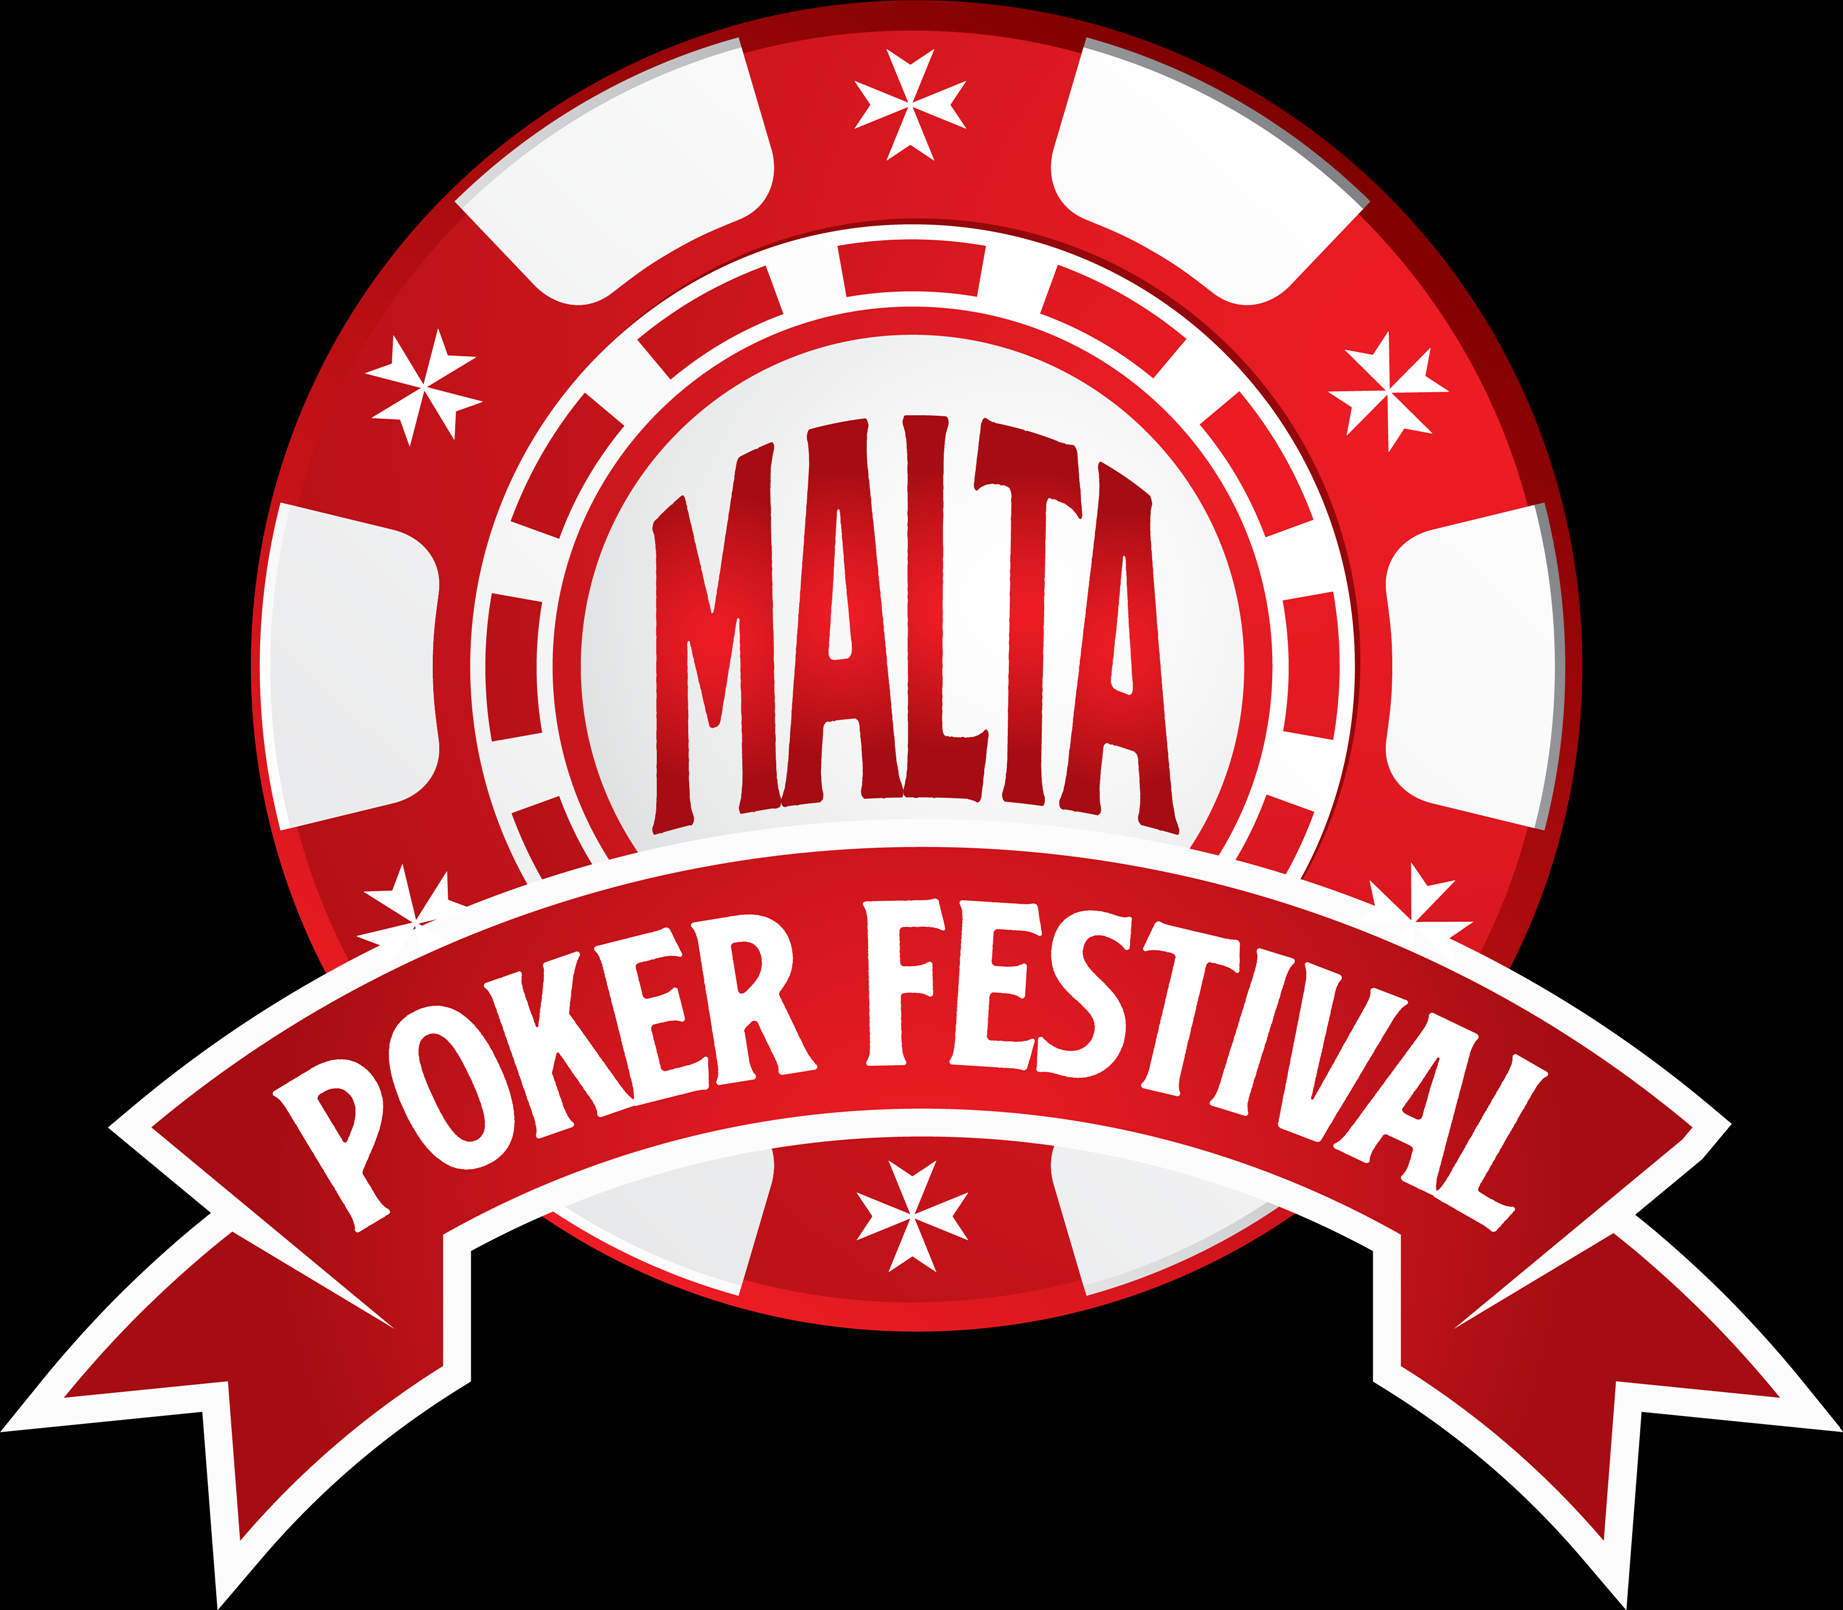 Malta Poker Festival 2018 poster